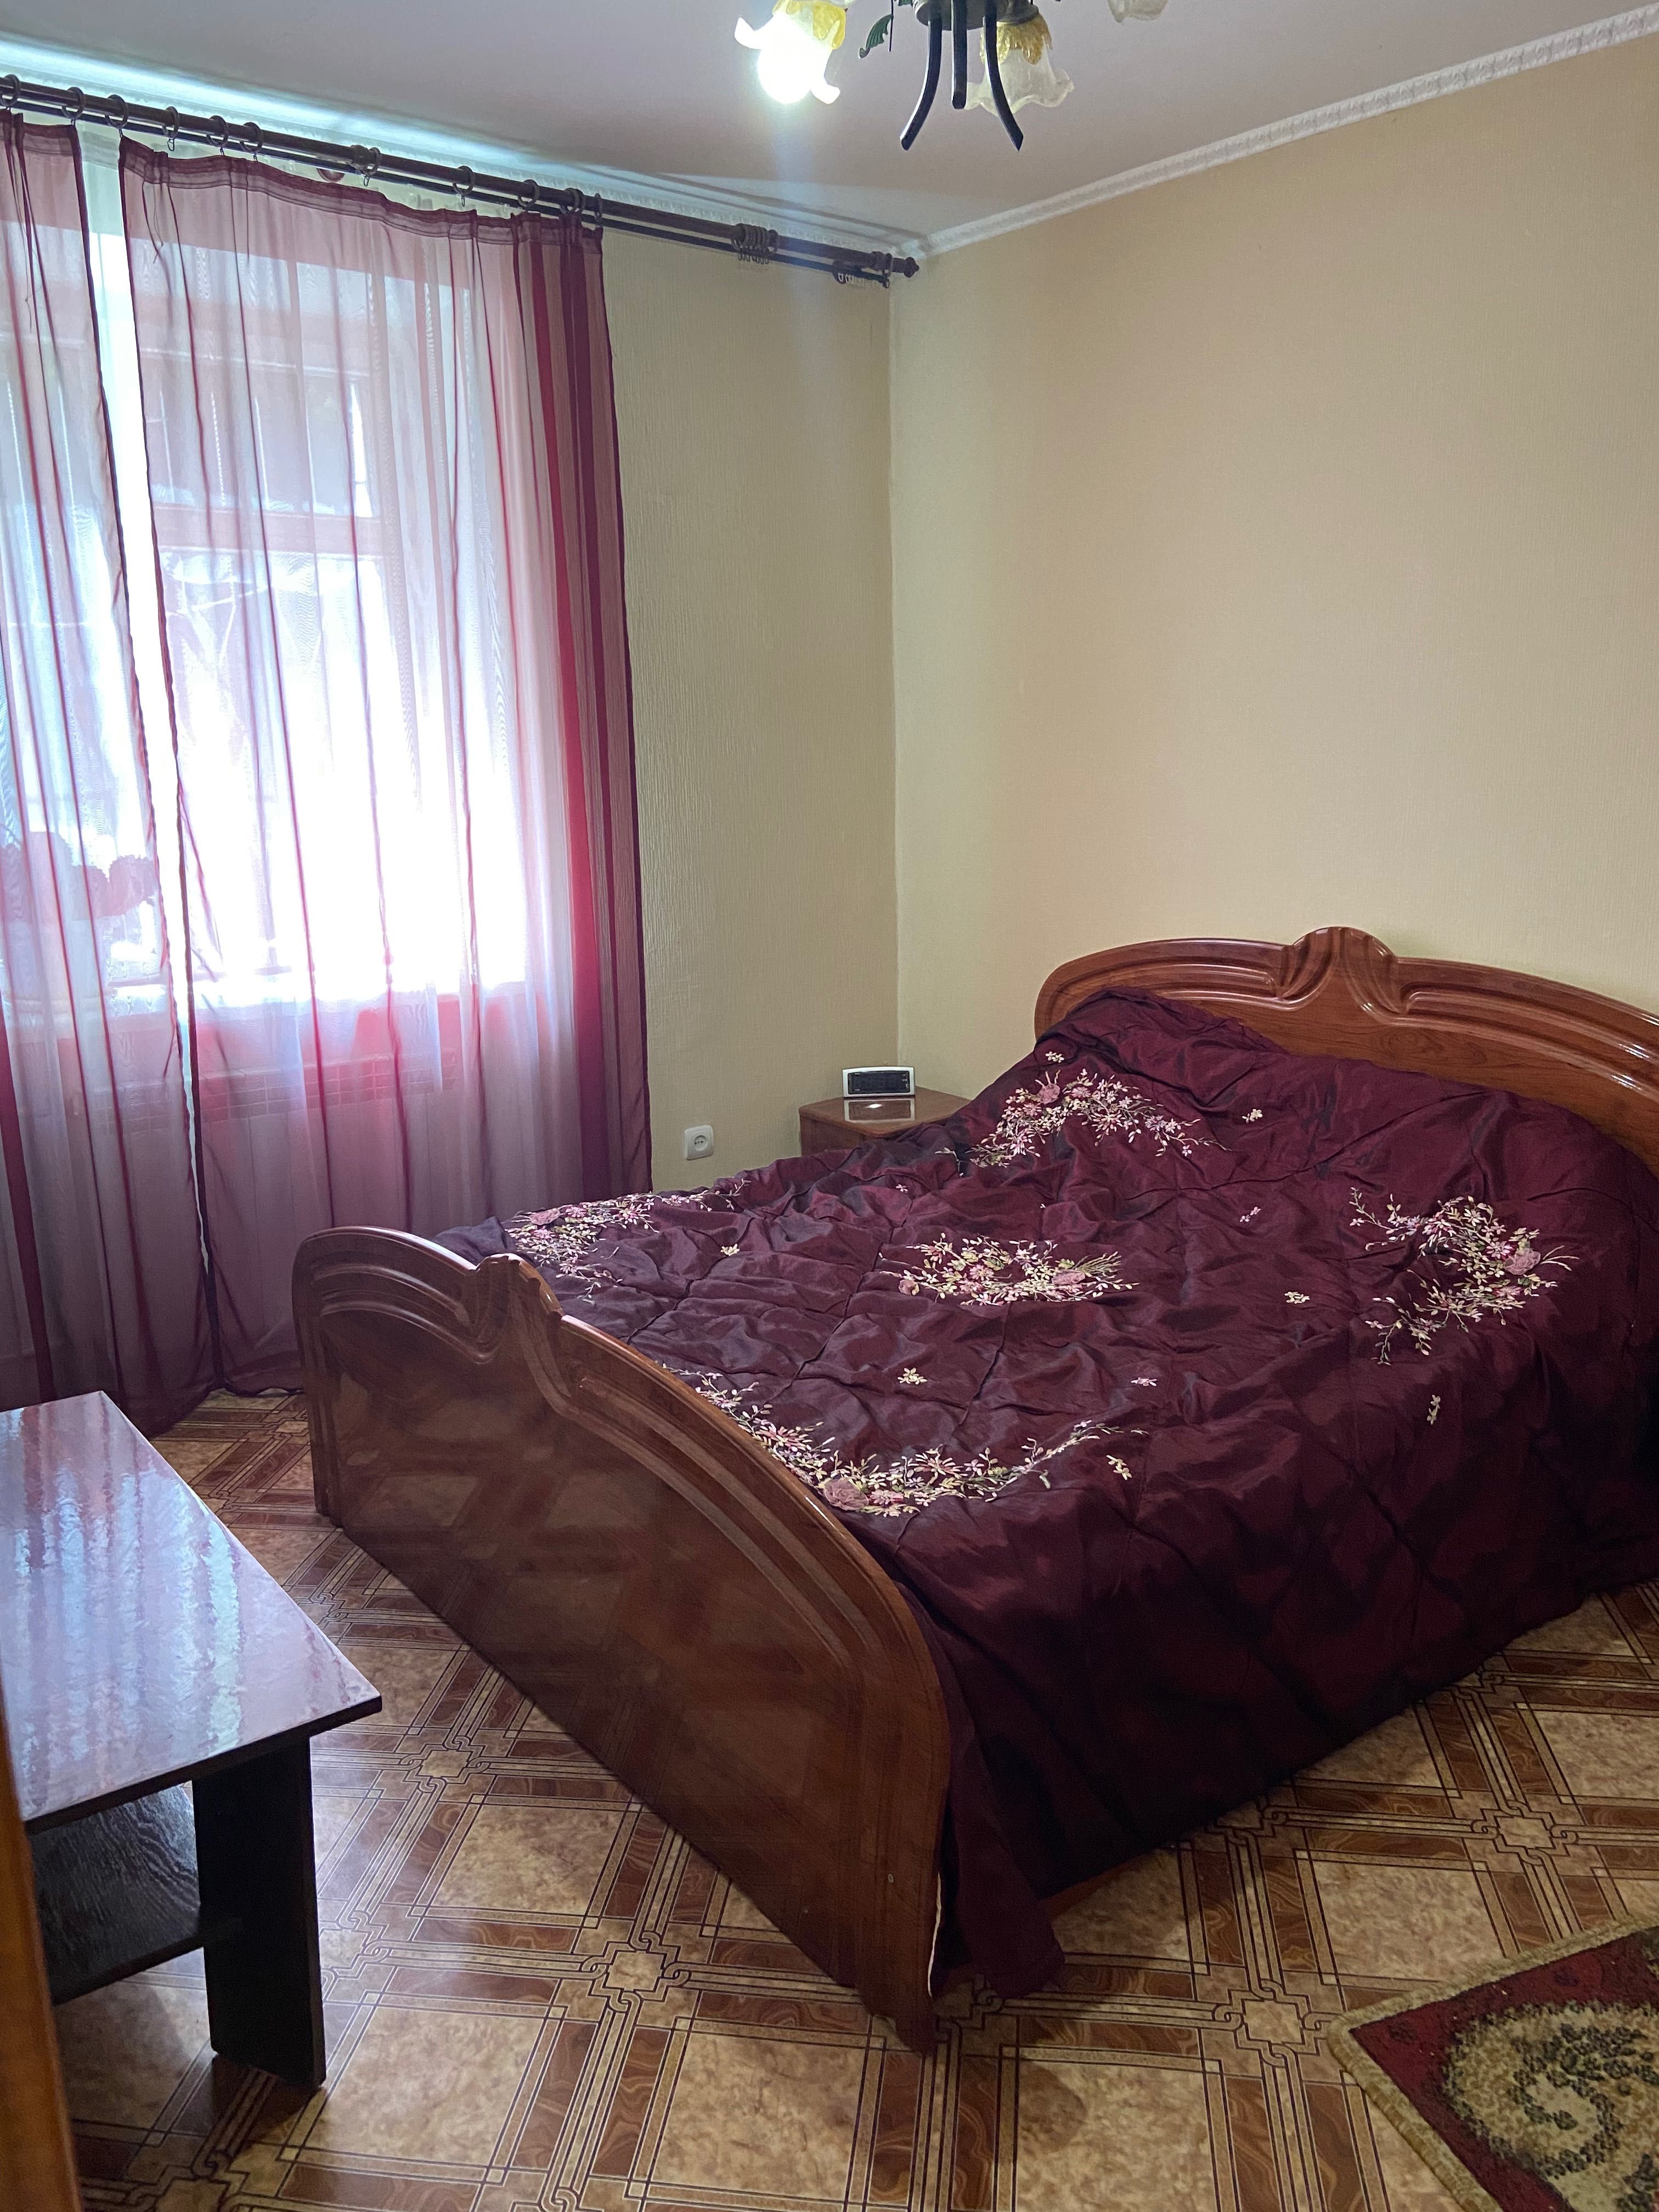 Продається 4-х кімнатна квартира в центрі міста Монастирище